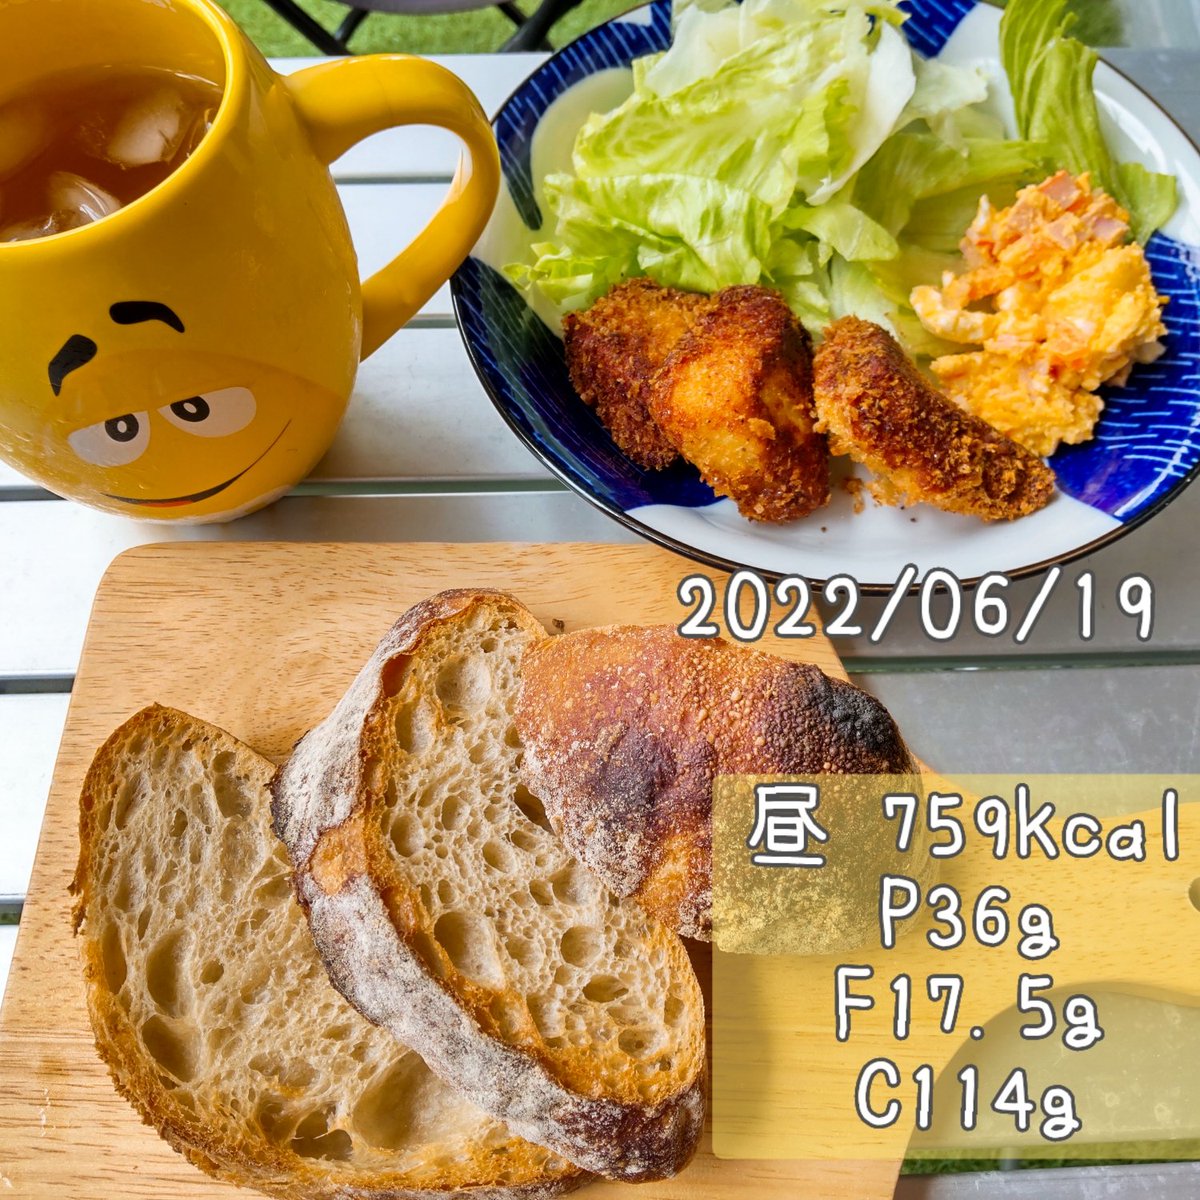 2022/06/19 まとめ 計2936kcal P170/F94.2/C363 前日の夕飯残りの、魚フライ、カボチャサラダ パン 画像見たまんま 父の日なので旦那用に焼肉等 間食多いので控え